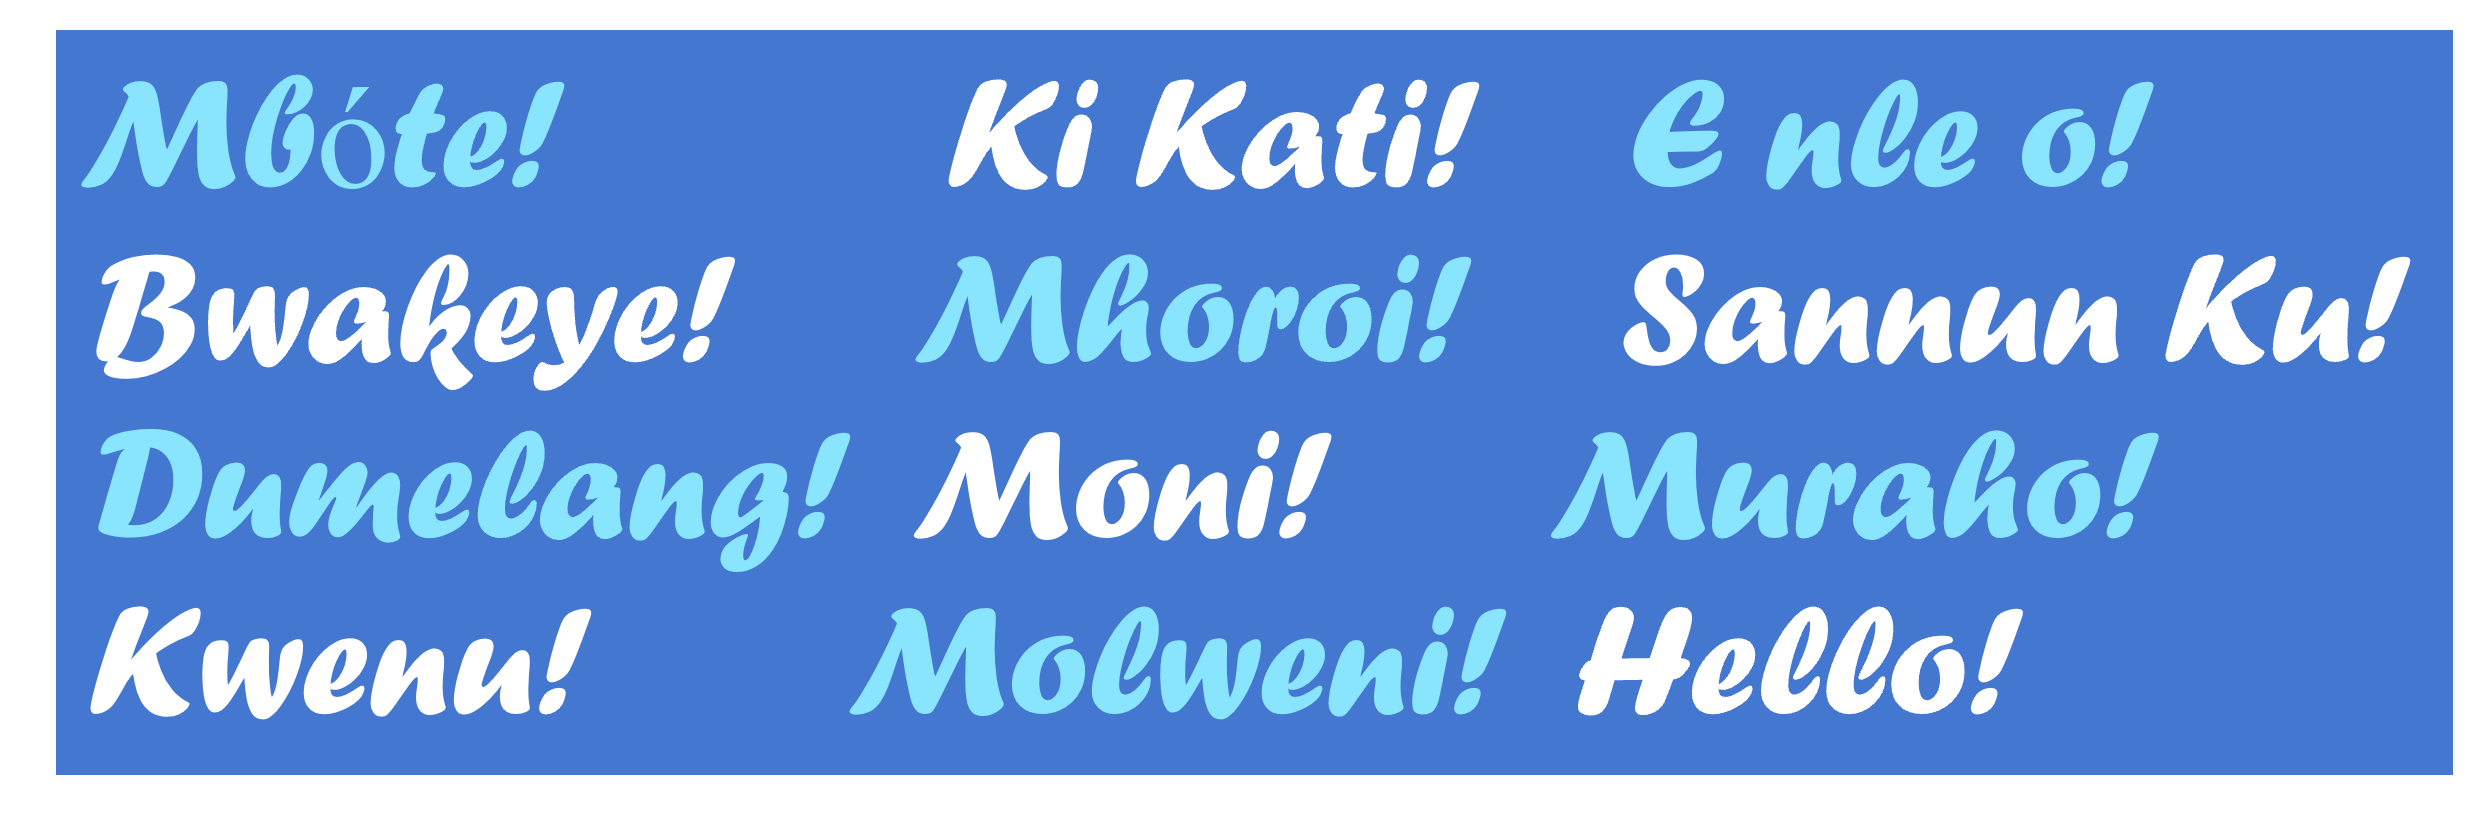 Slika prikazuje englesku frazu "Hello" i njezin prijevod na skup afričkih jezika opisanih u ovom postu na blogu.